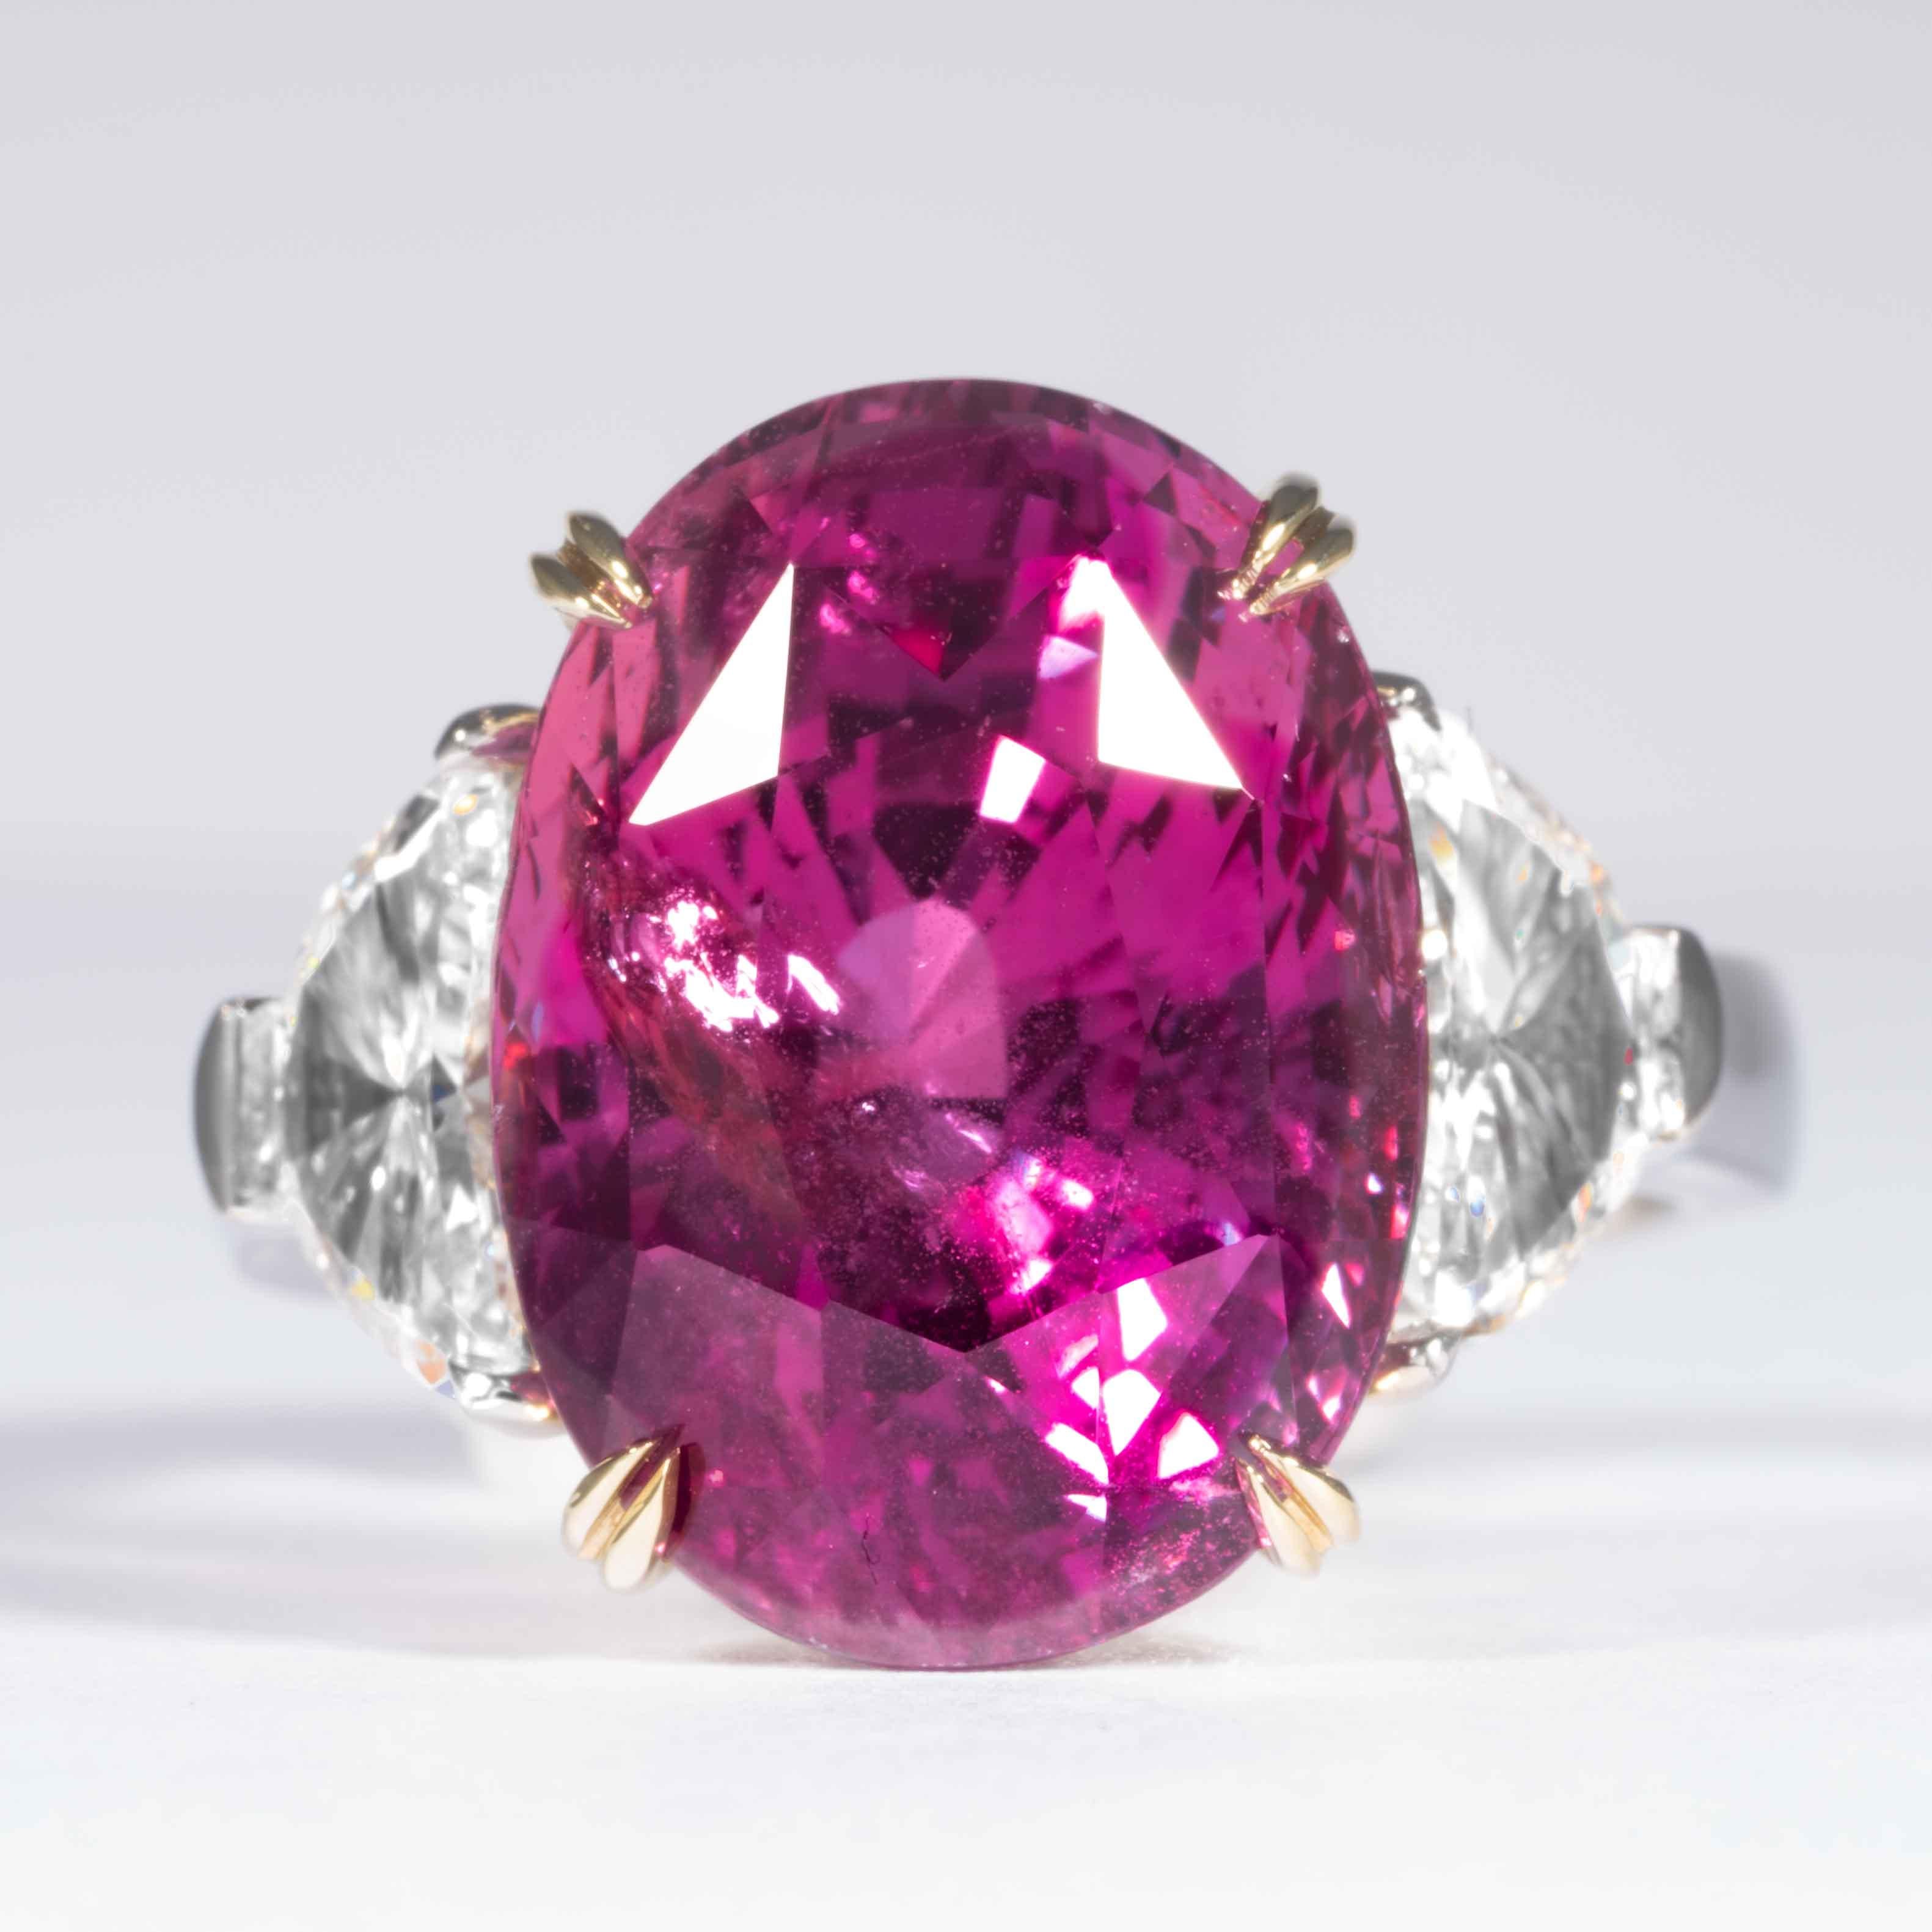 Dieser 3-Stein-Ring mit Saphiren und Diamanten wird von Shreve, Crump & Low angeboten.  Dieser oval geschliffene rosa Saphir ist in einem handgefertigten 3-Stein-Platinring von Shreve, Crump & Low gefasst. Dieser leuchtend rosa Saphir im Ovalschliff